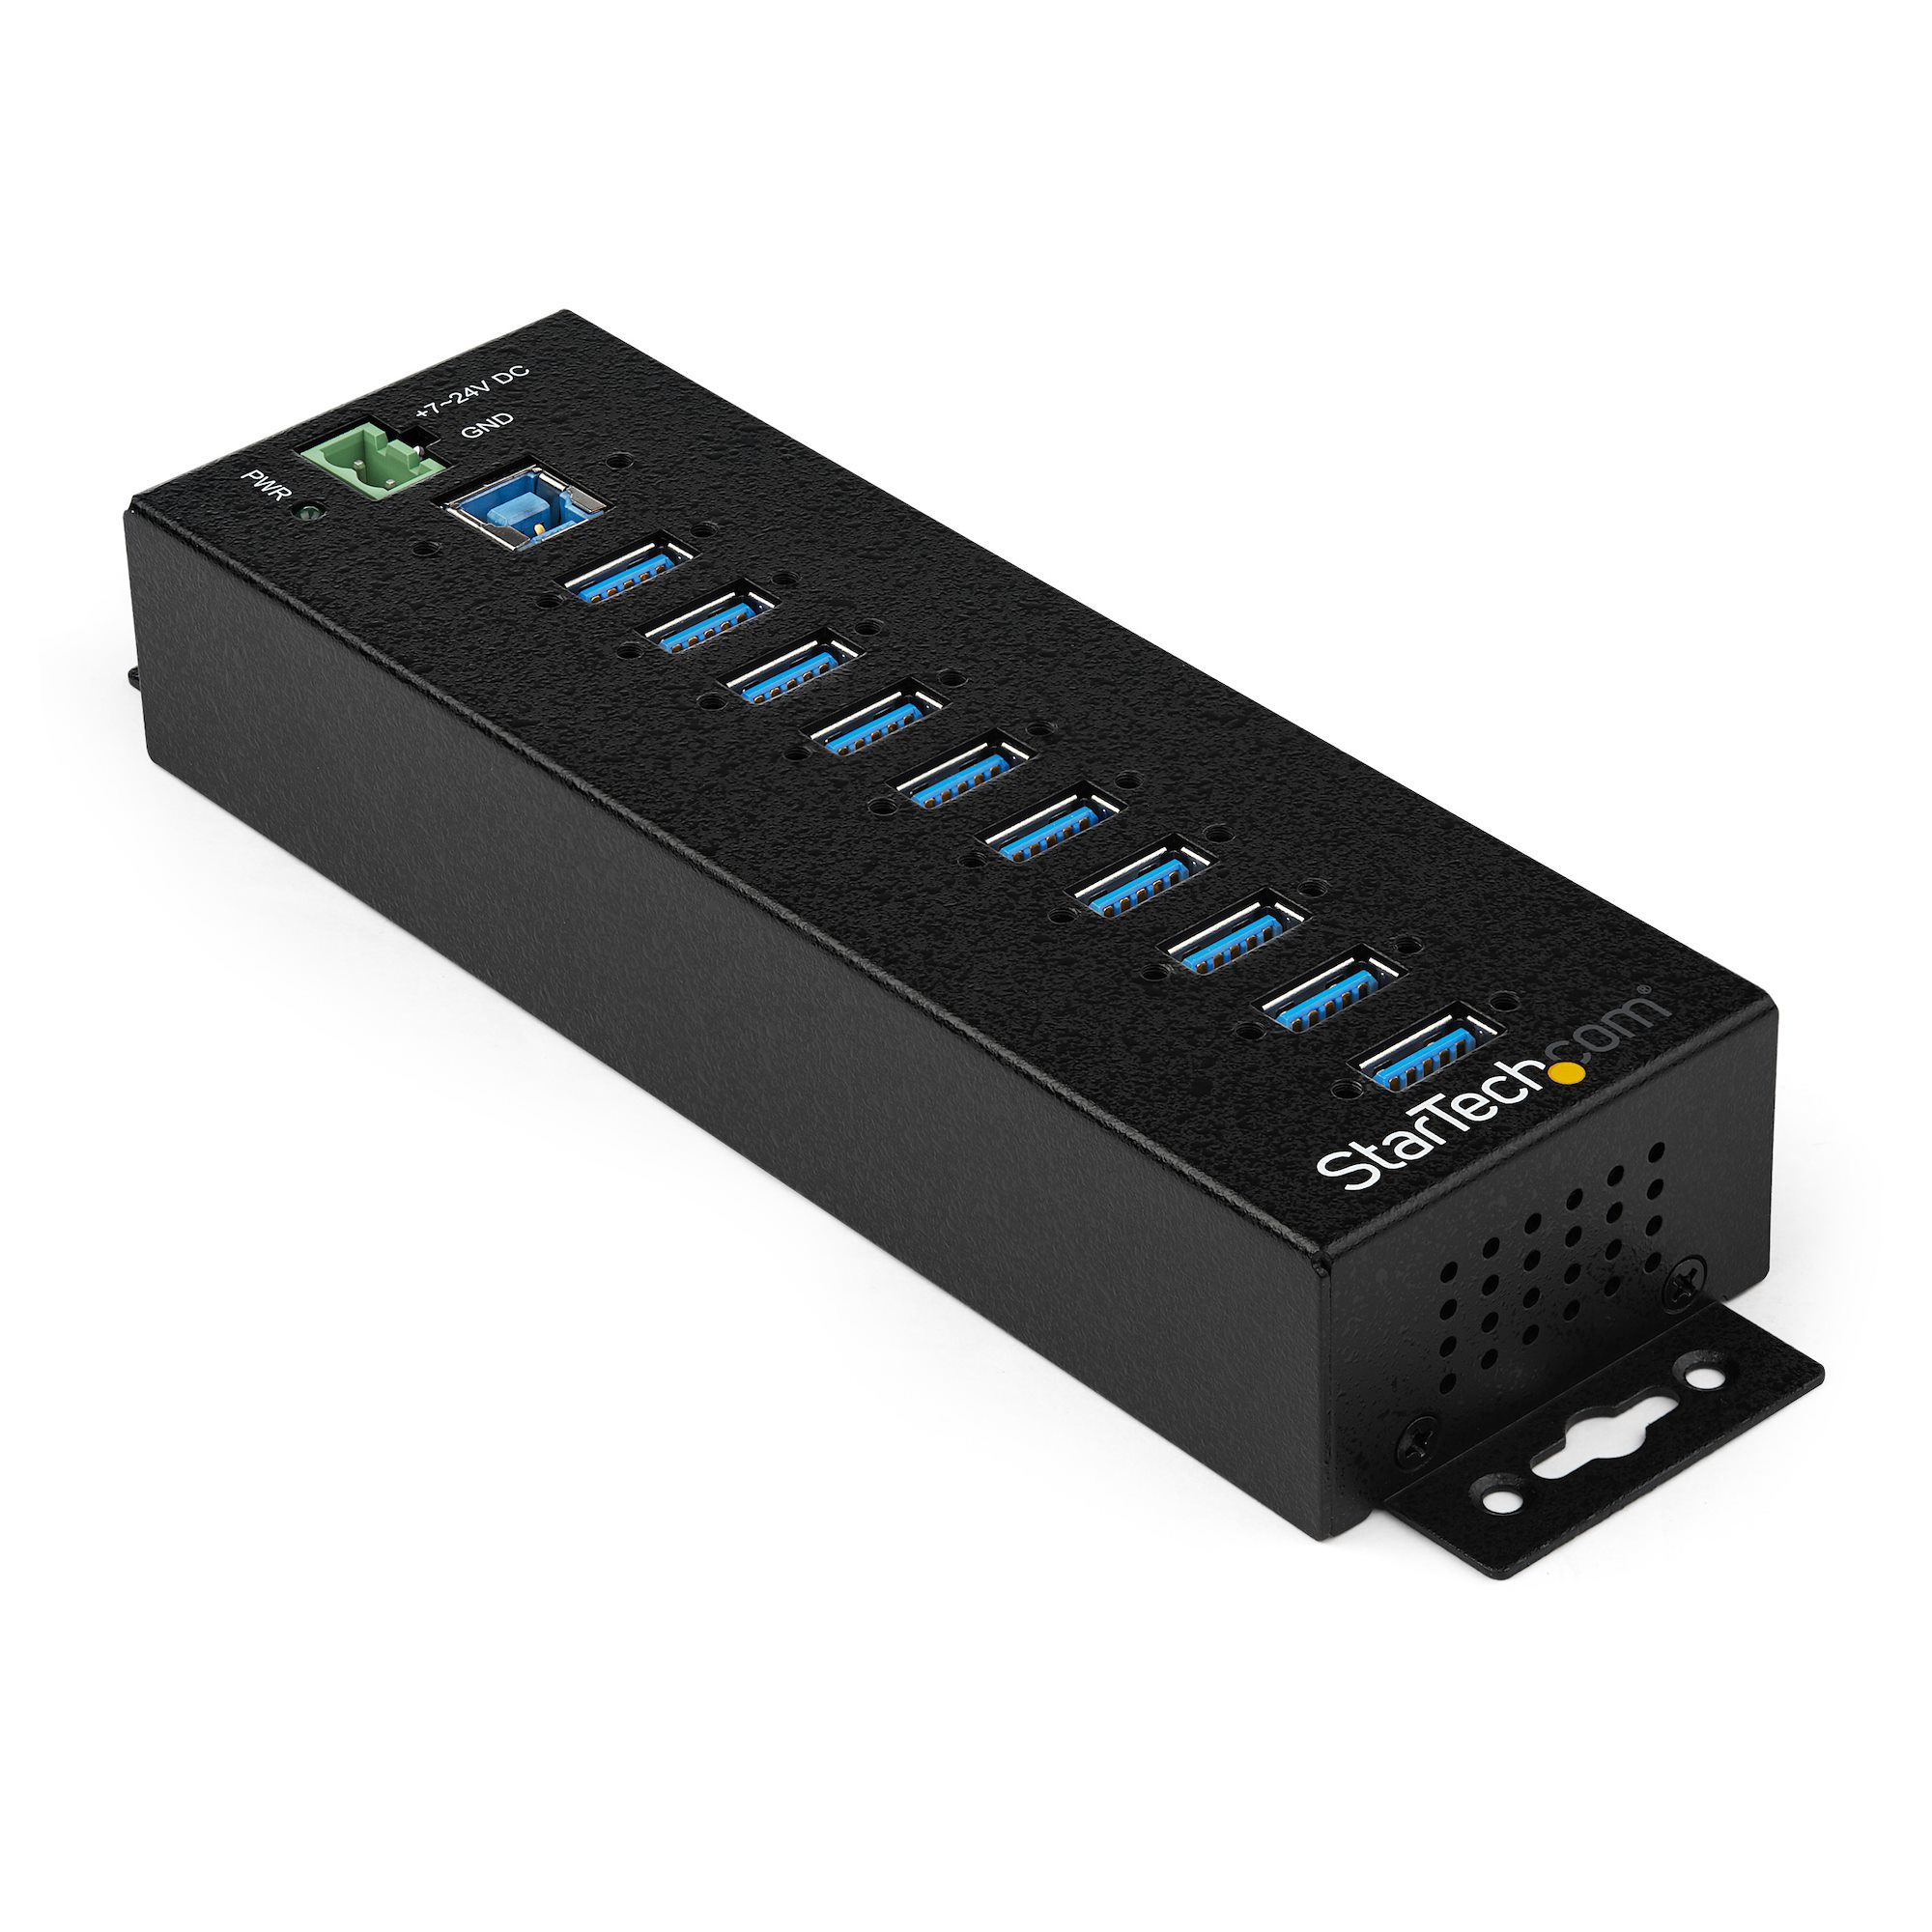 StarTech.com HB30A10AME USB 3.0 Hub (10-Port, Din-Rail,  Industrielle Anwendung, externes Netzteil, Uberspannungsschutz, ESD, 350 W, 15 kV)